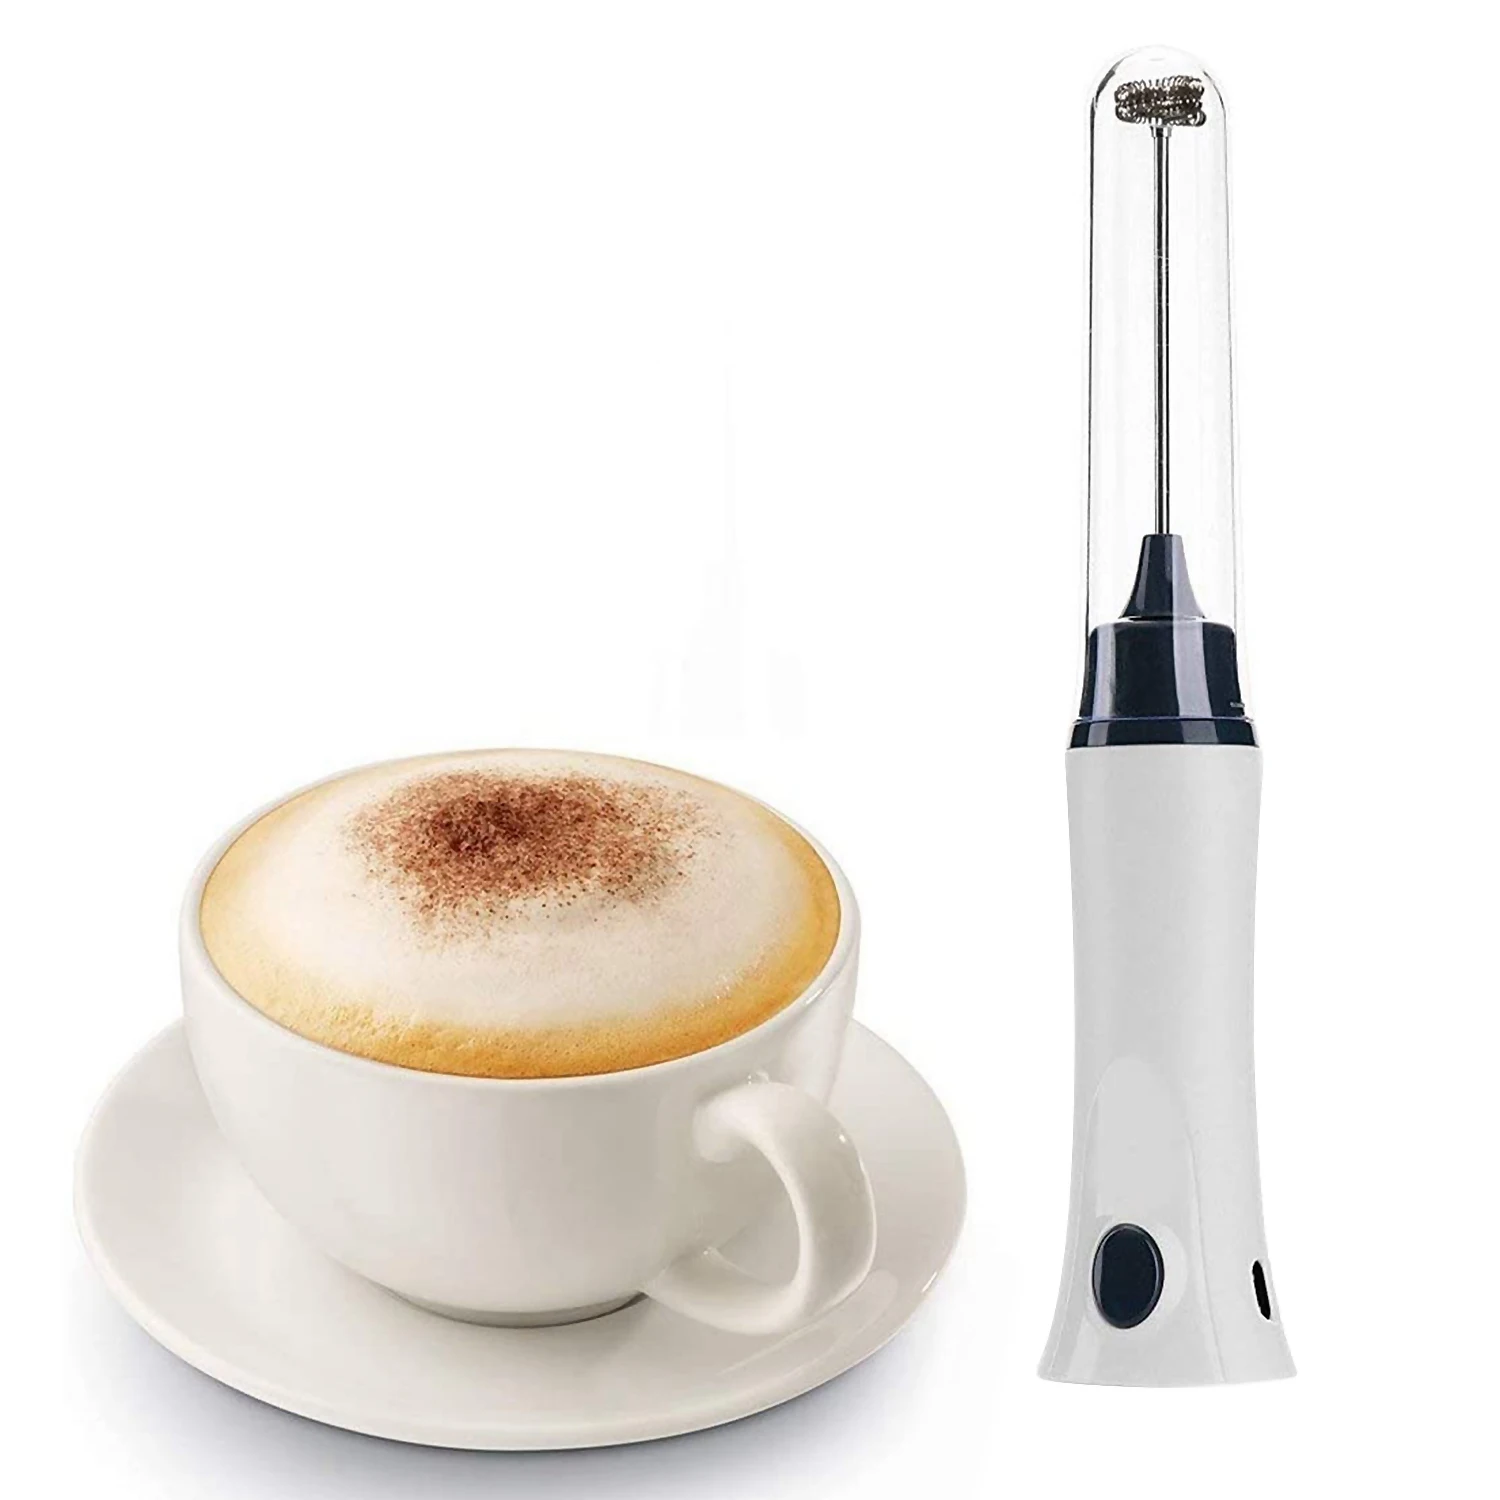 Kézi elektromos kávéfőző habosító habosító automata tejital habosító krém habverő főzőkeverő tojásverő fedéllel - 1